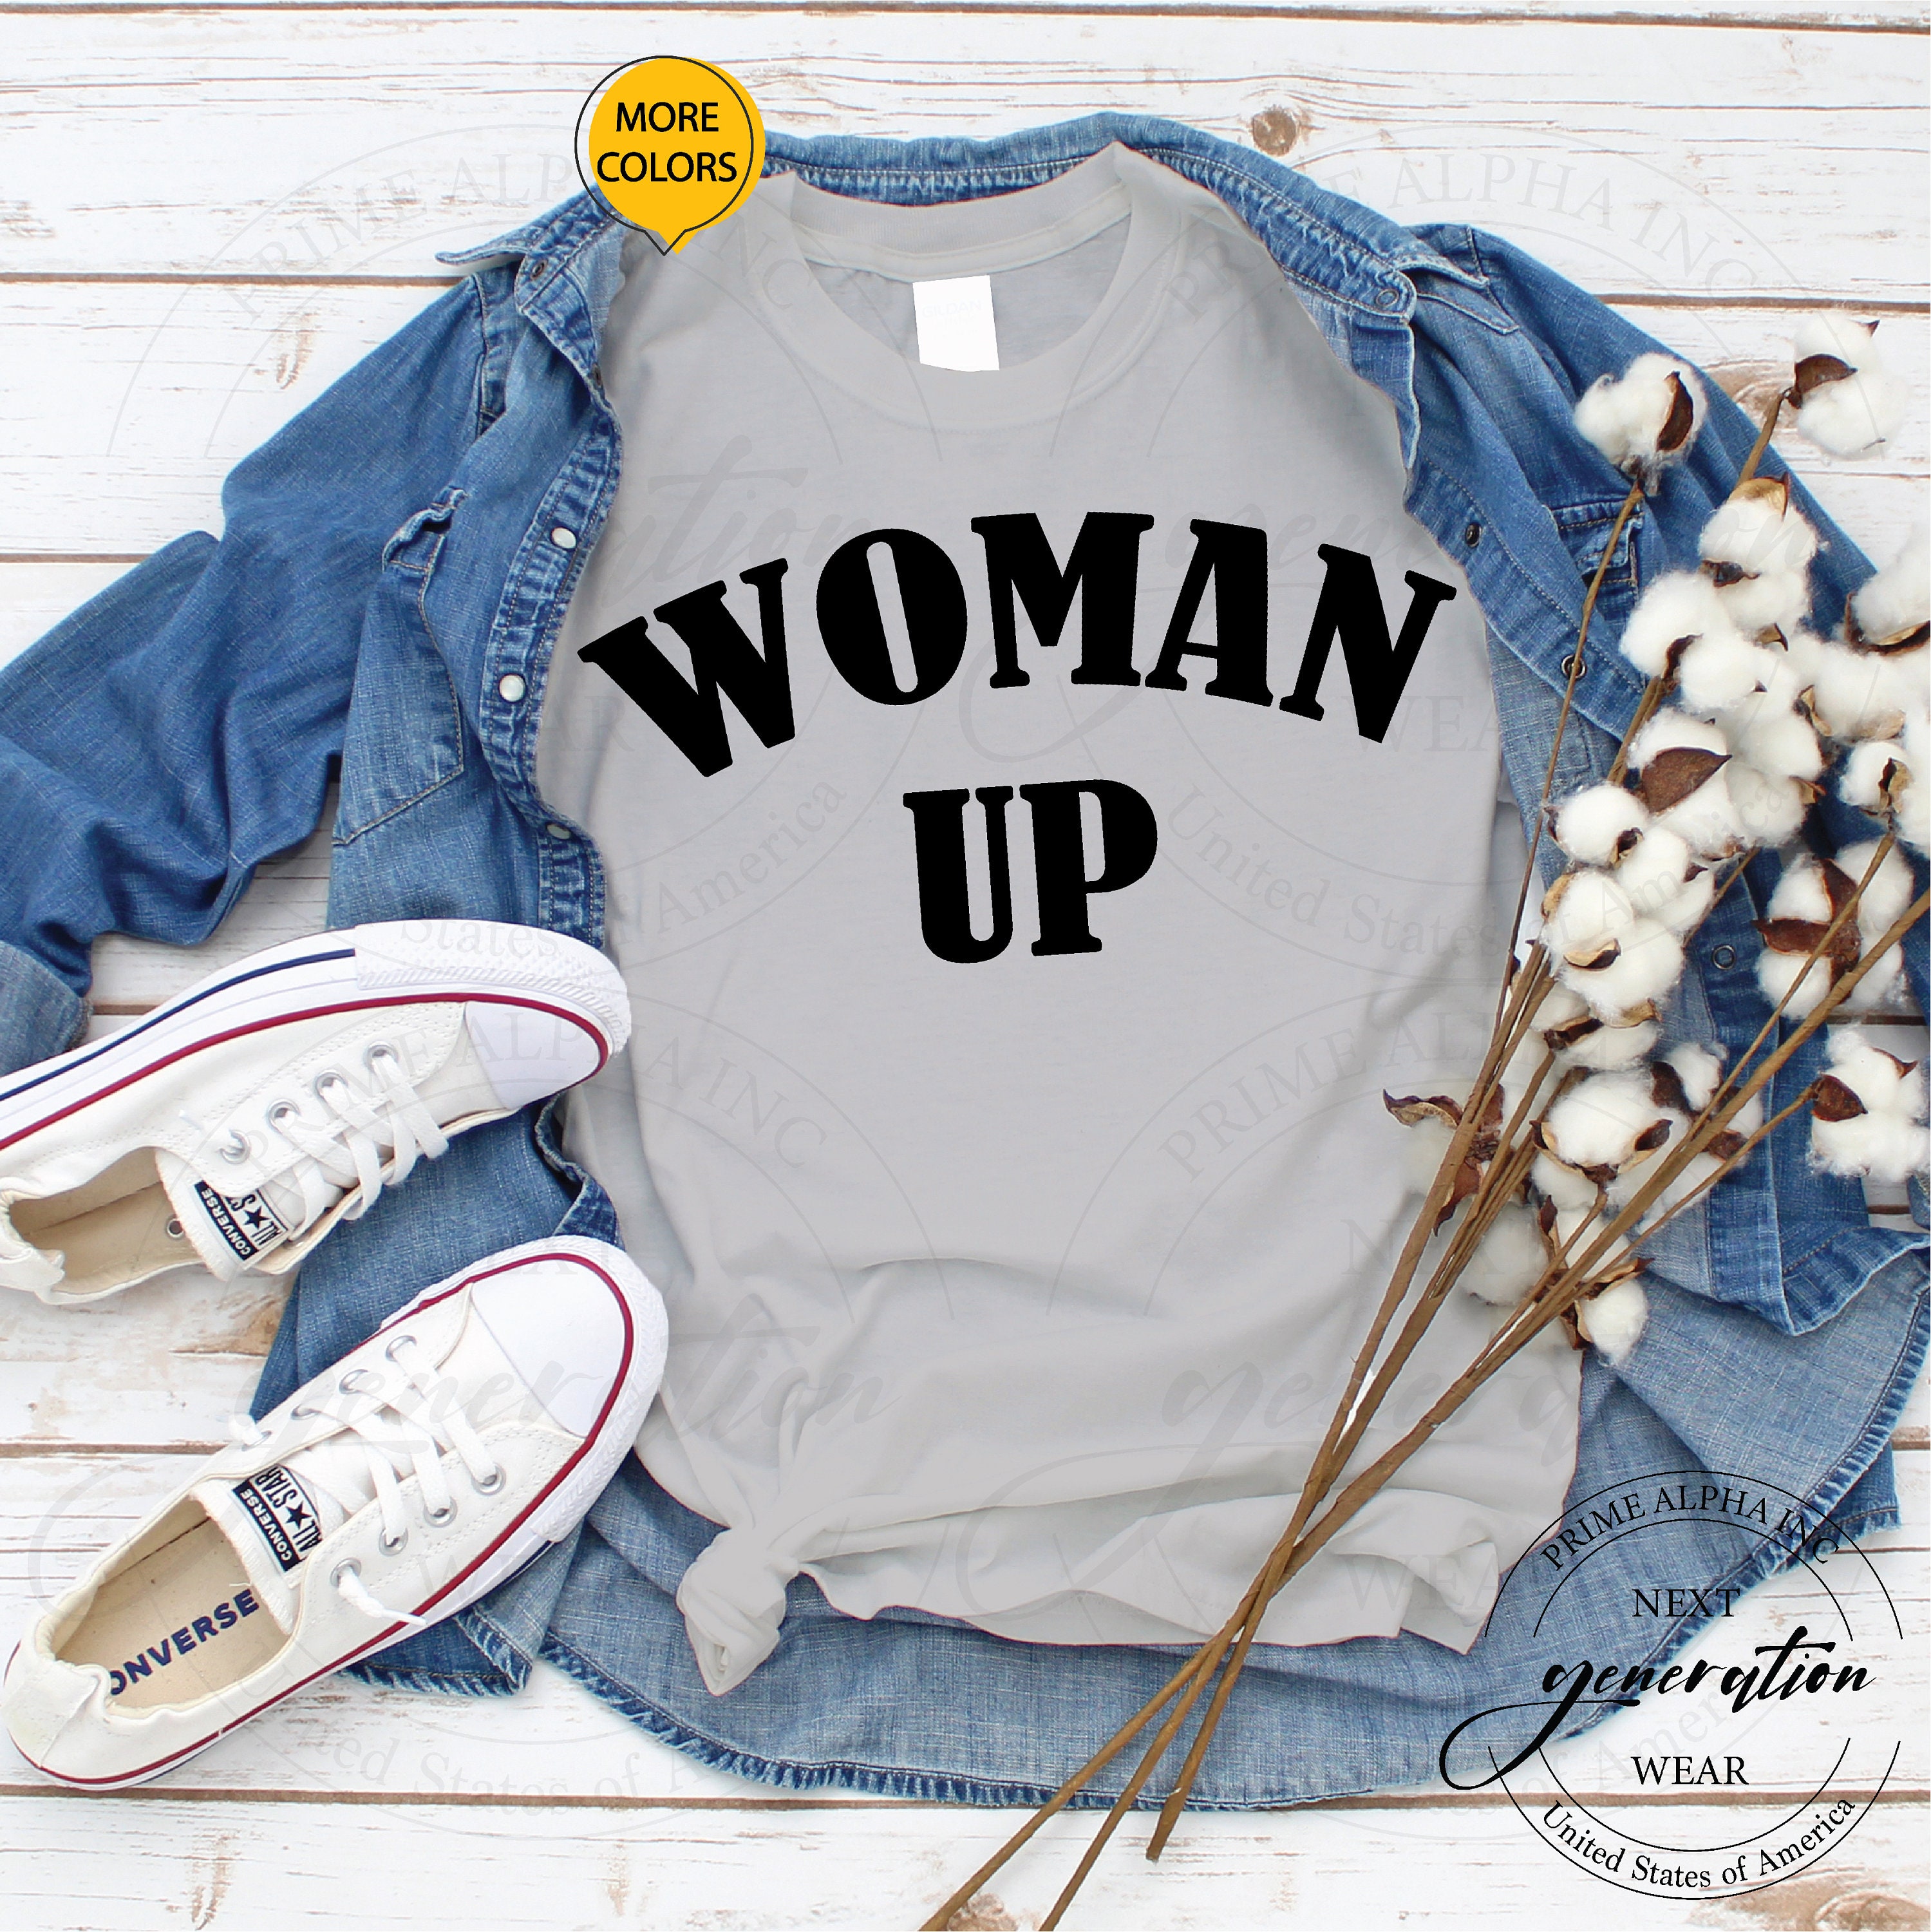 Discover Woman Up Shirt, Women Up T-shirt, Feminist Shirt, Women Empowerment, Motivational Shirt, Inspirational Shirt, Woman Up